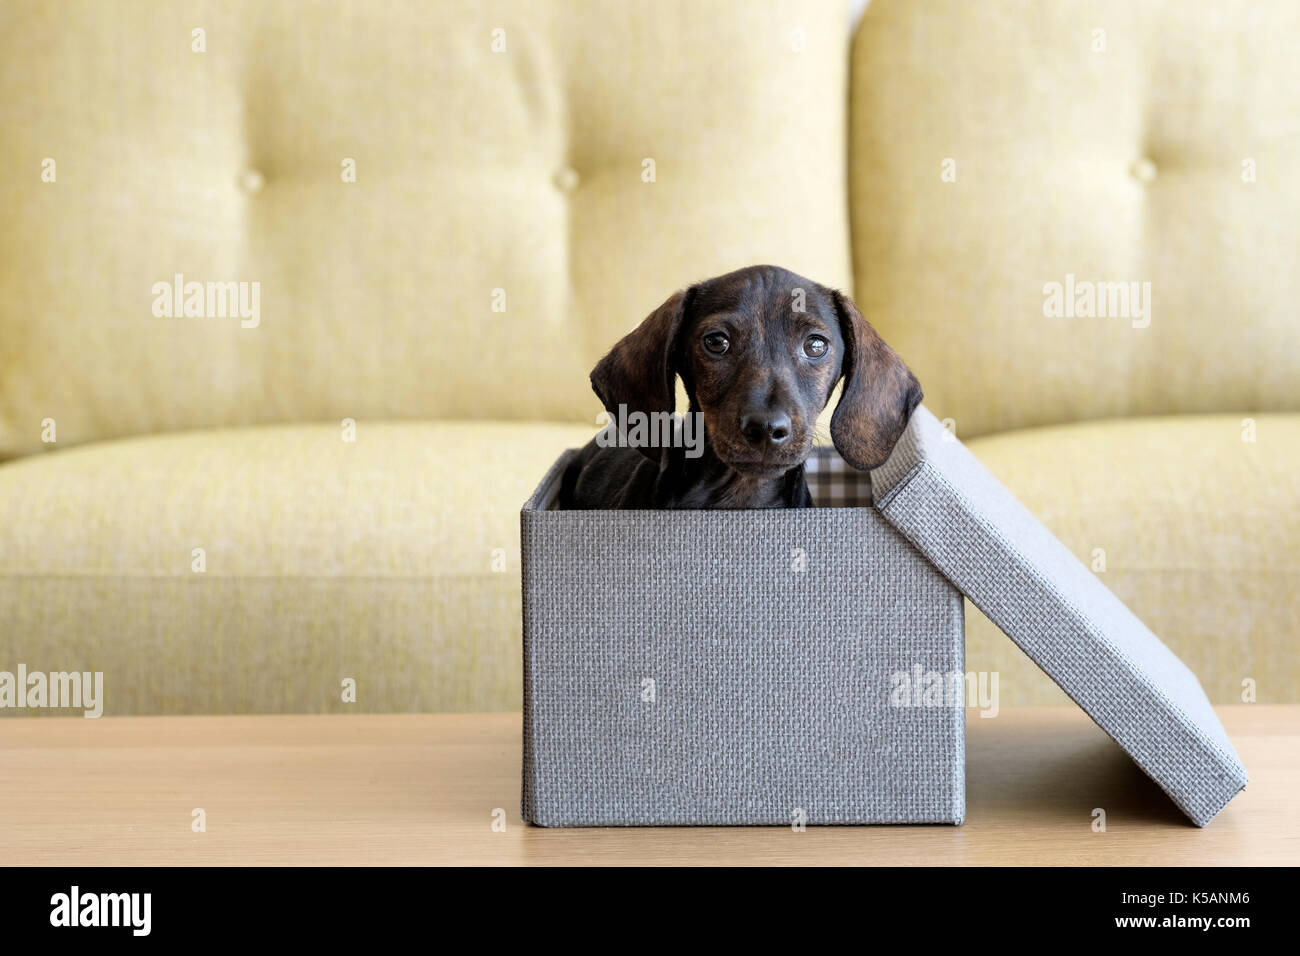 Einen Welpen dackel Hund innerhalb einer Tweed fertigen Kiste mit Deckel zur Seite. Sieht aus, als wenn der Welpe gerade angekommen hat als Geschenk Stockfoto